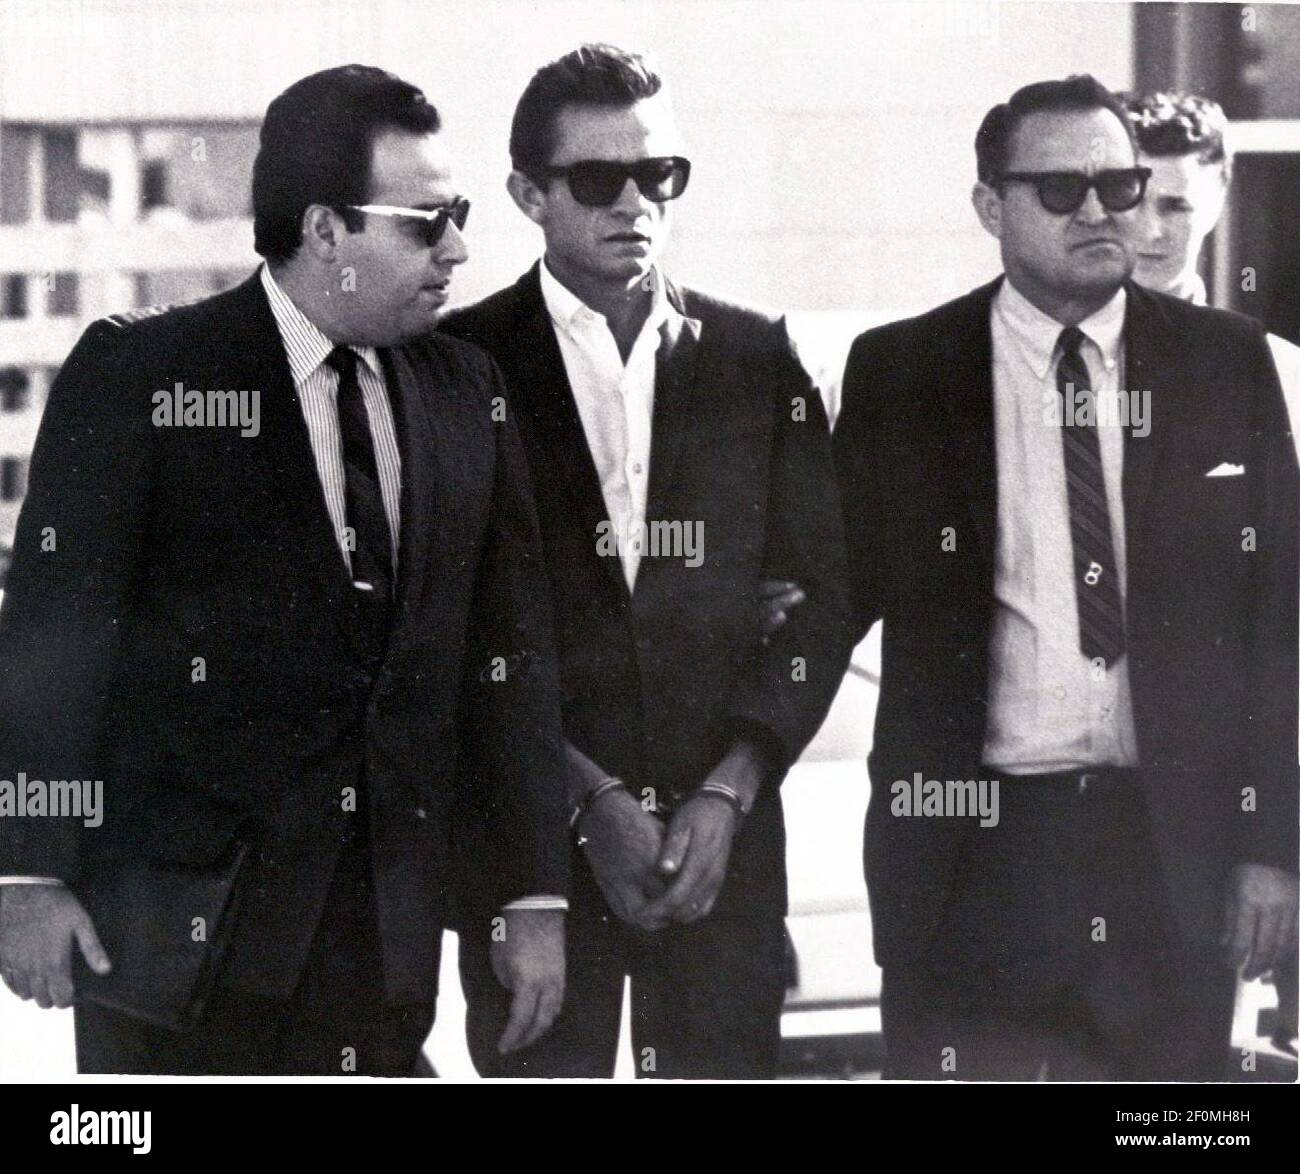 5 de octubre de 1965; el Paso, TX, EE.UU.; Johnny Cash, estrella del país y del oeste, el centro, está flanqueado por un bondman y un Marshall de los EE.UU. Mientras fue transferido de la cárcel del Condado de el Paso al juzgado federal el martes. El efectivo fue detenido el lunes en el aeropuerto internacional y acusado de importar y ocultar más de 1.000 pastillas de pepa y tranquilizantes. El bono era de $1.500. Crédito obligatorio: El Paso Times via USA TODAY NETWORK/Sipa USA Foto de stock